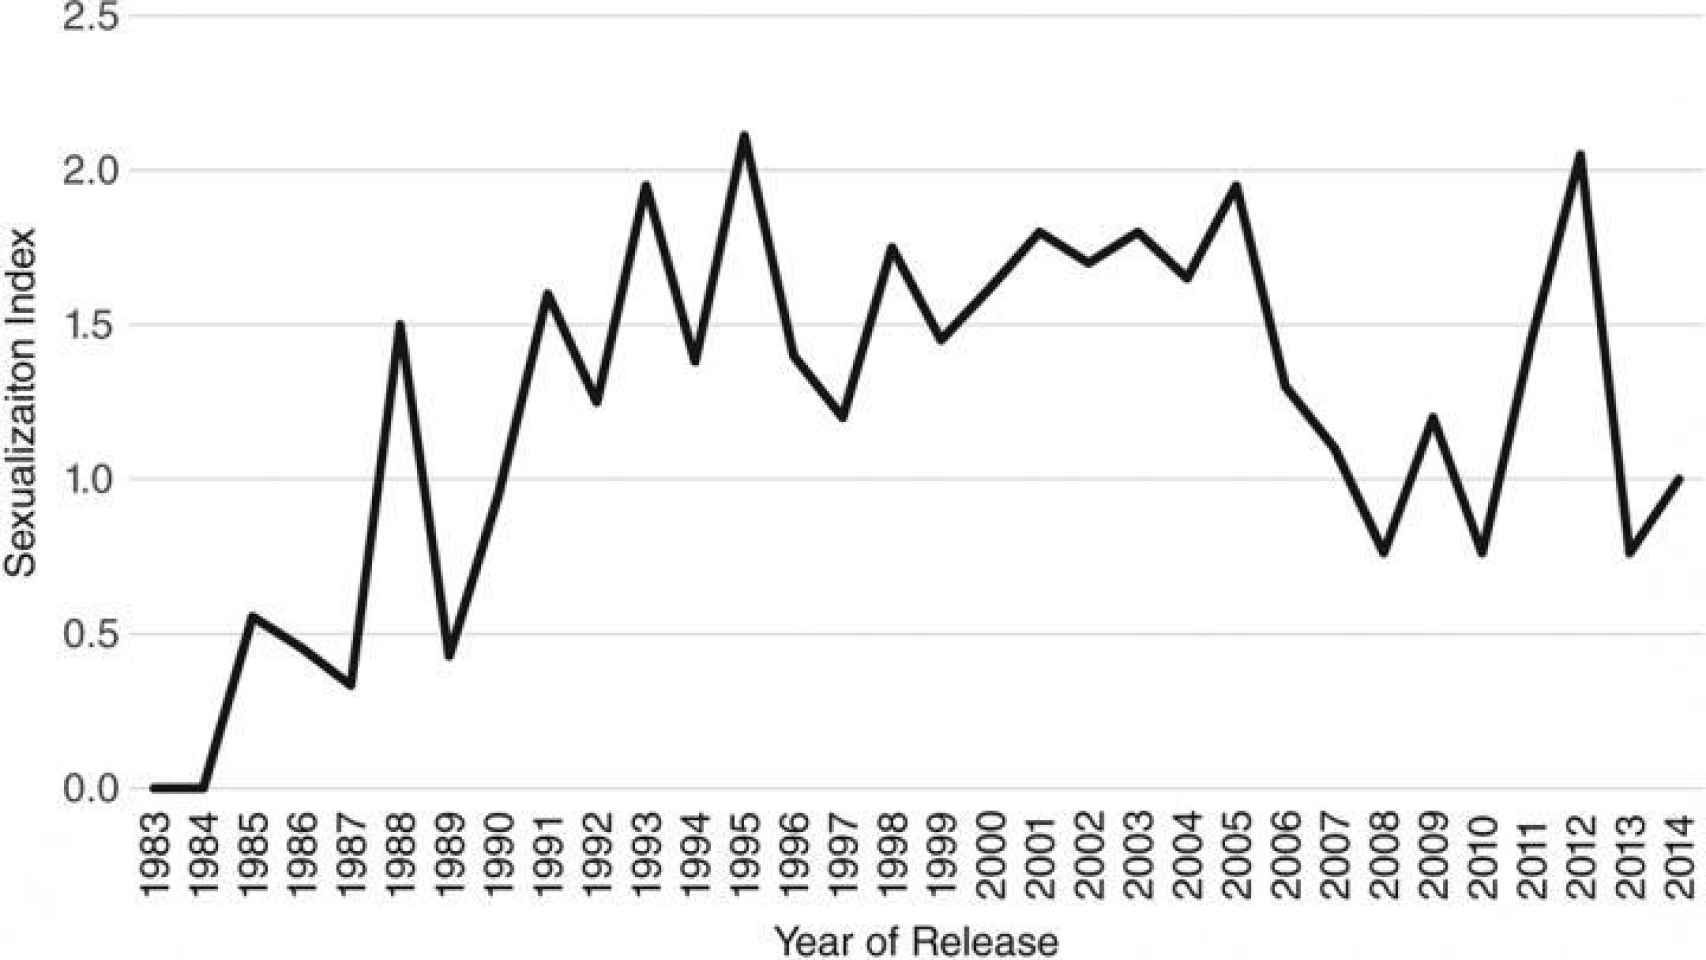 Indice de sexualización de 1996 a 2014.